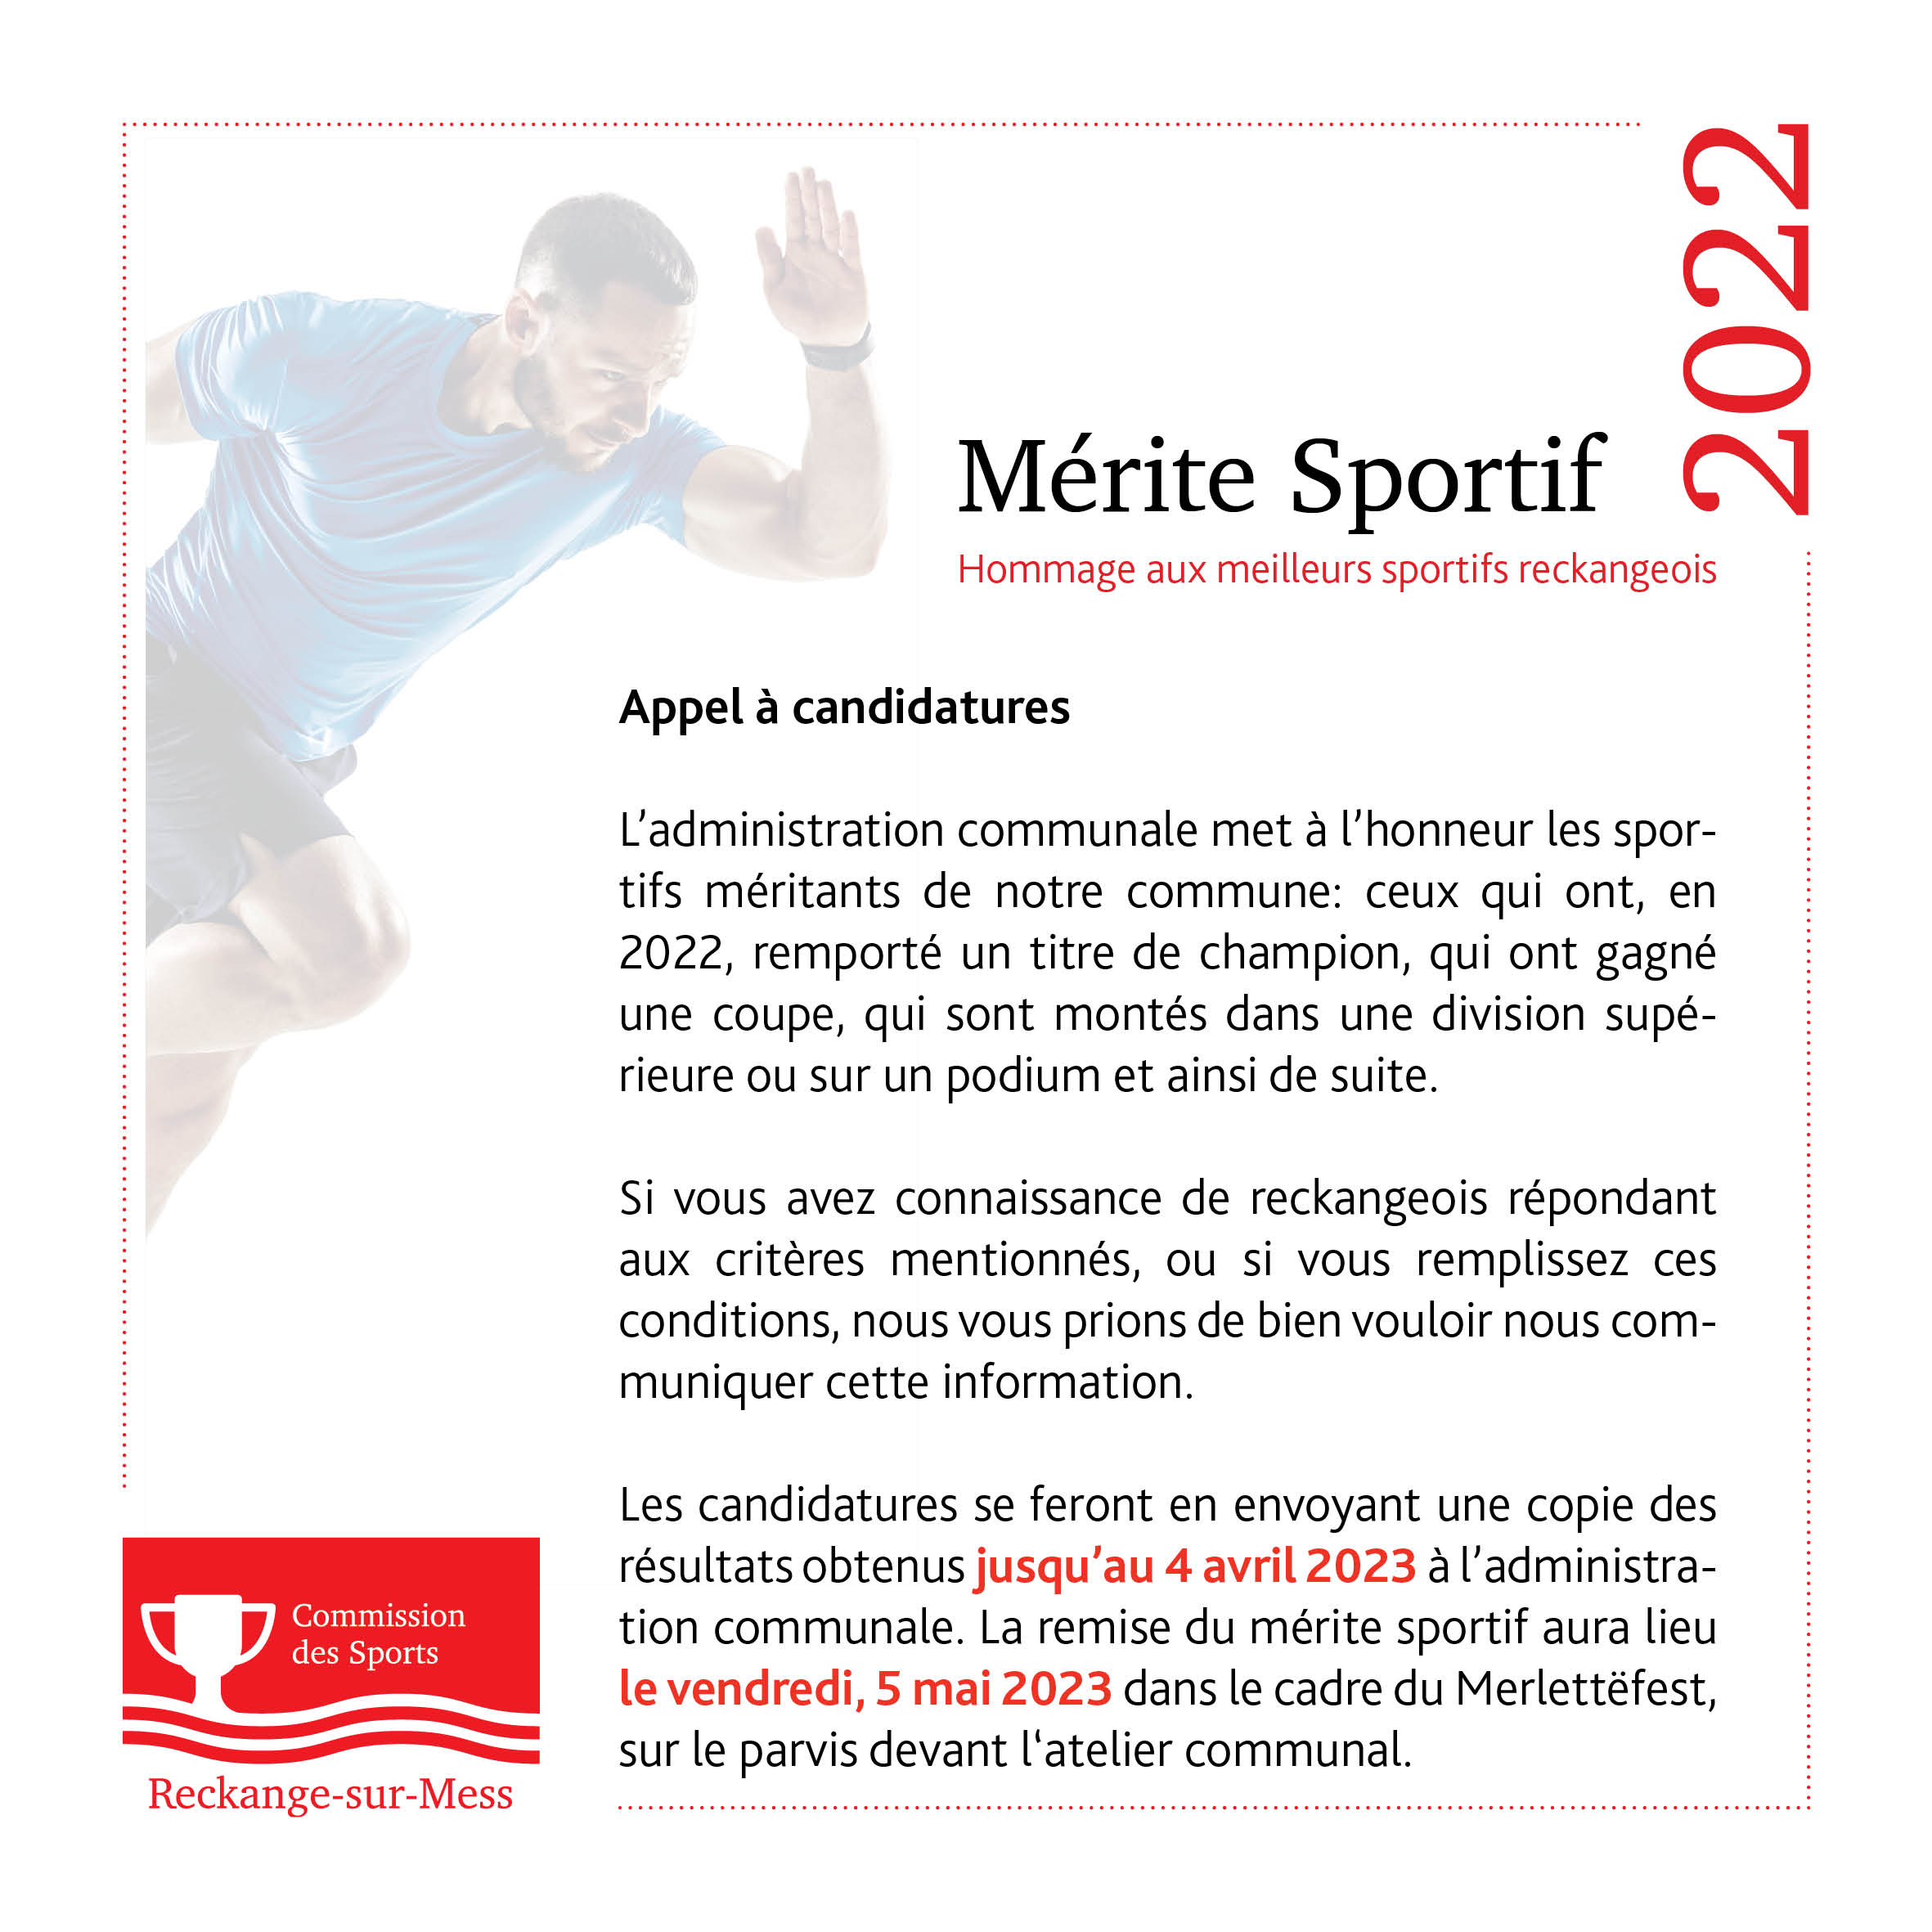 Mérite sportif 2022 - Appel à candidatures